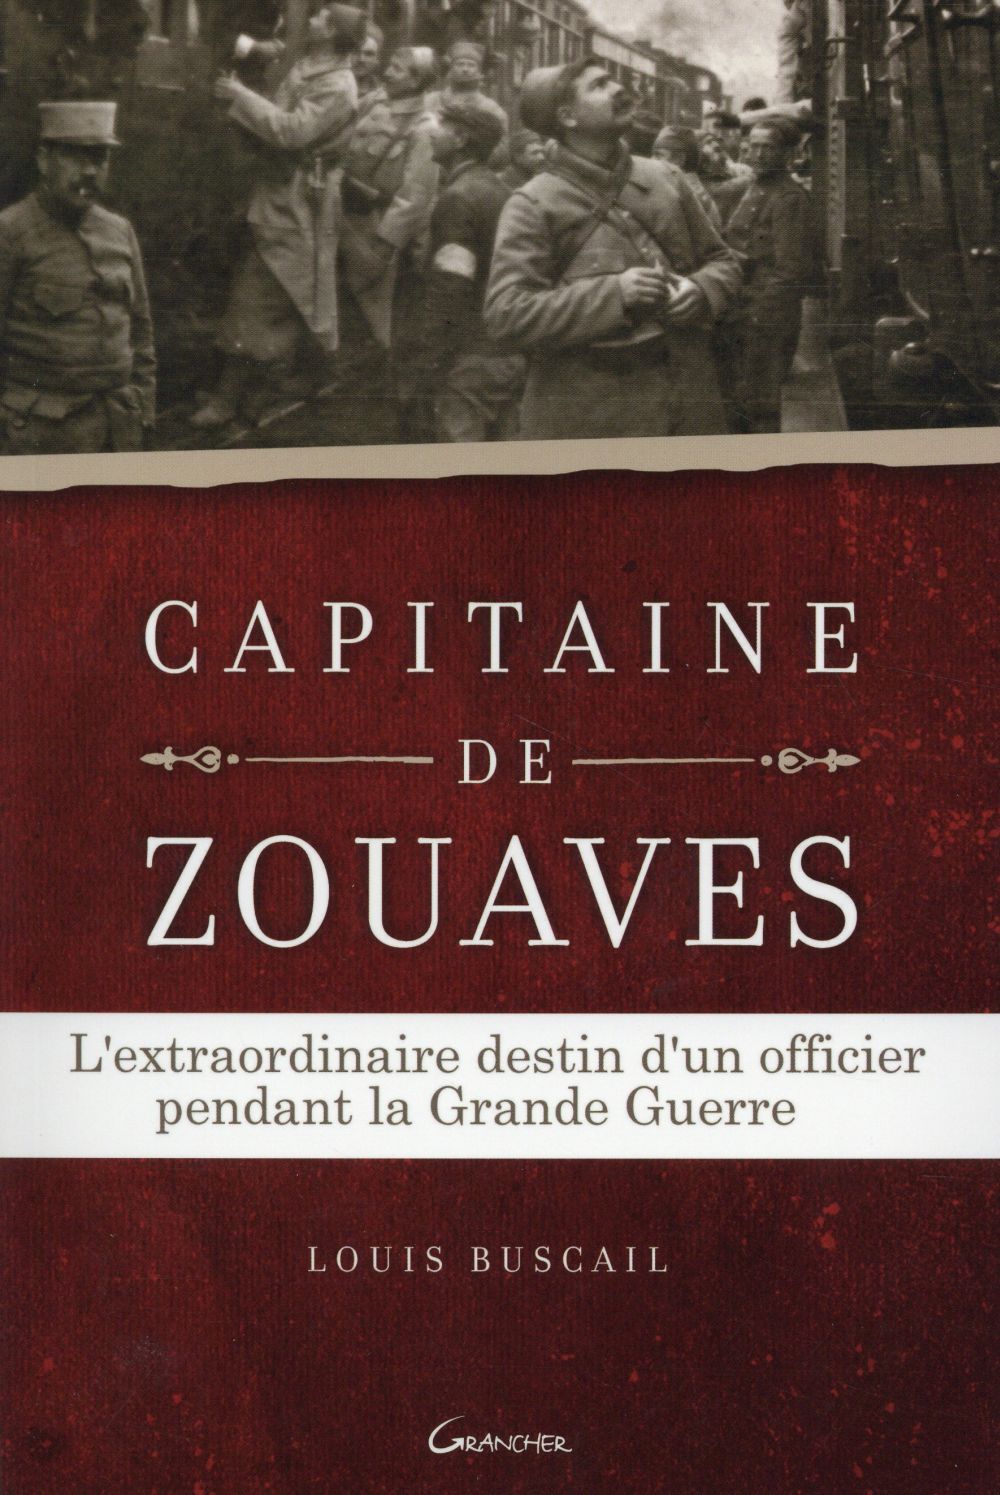 CAPITAINE DE ZOUAVES - L'EXTRAORDINAIRE DESTIN D'UN OFFICIER PENDANT LA GRANDE GUERRE